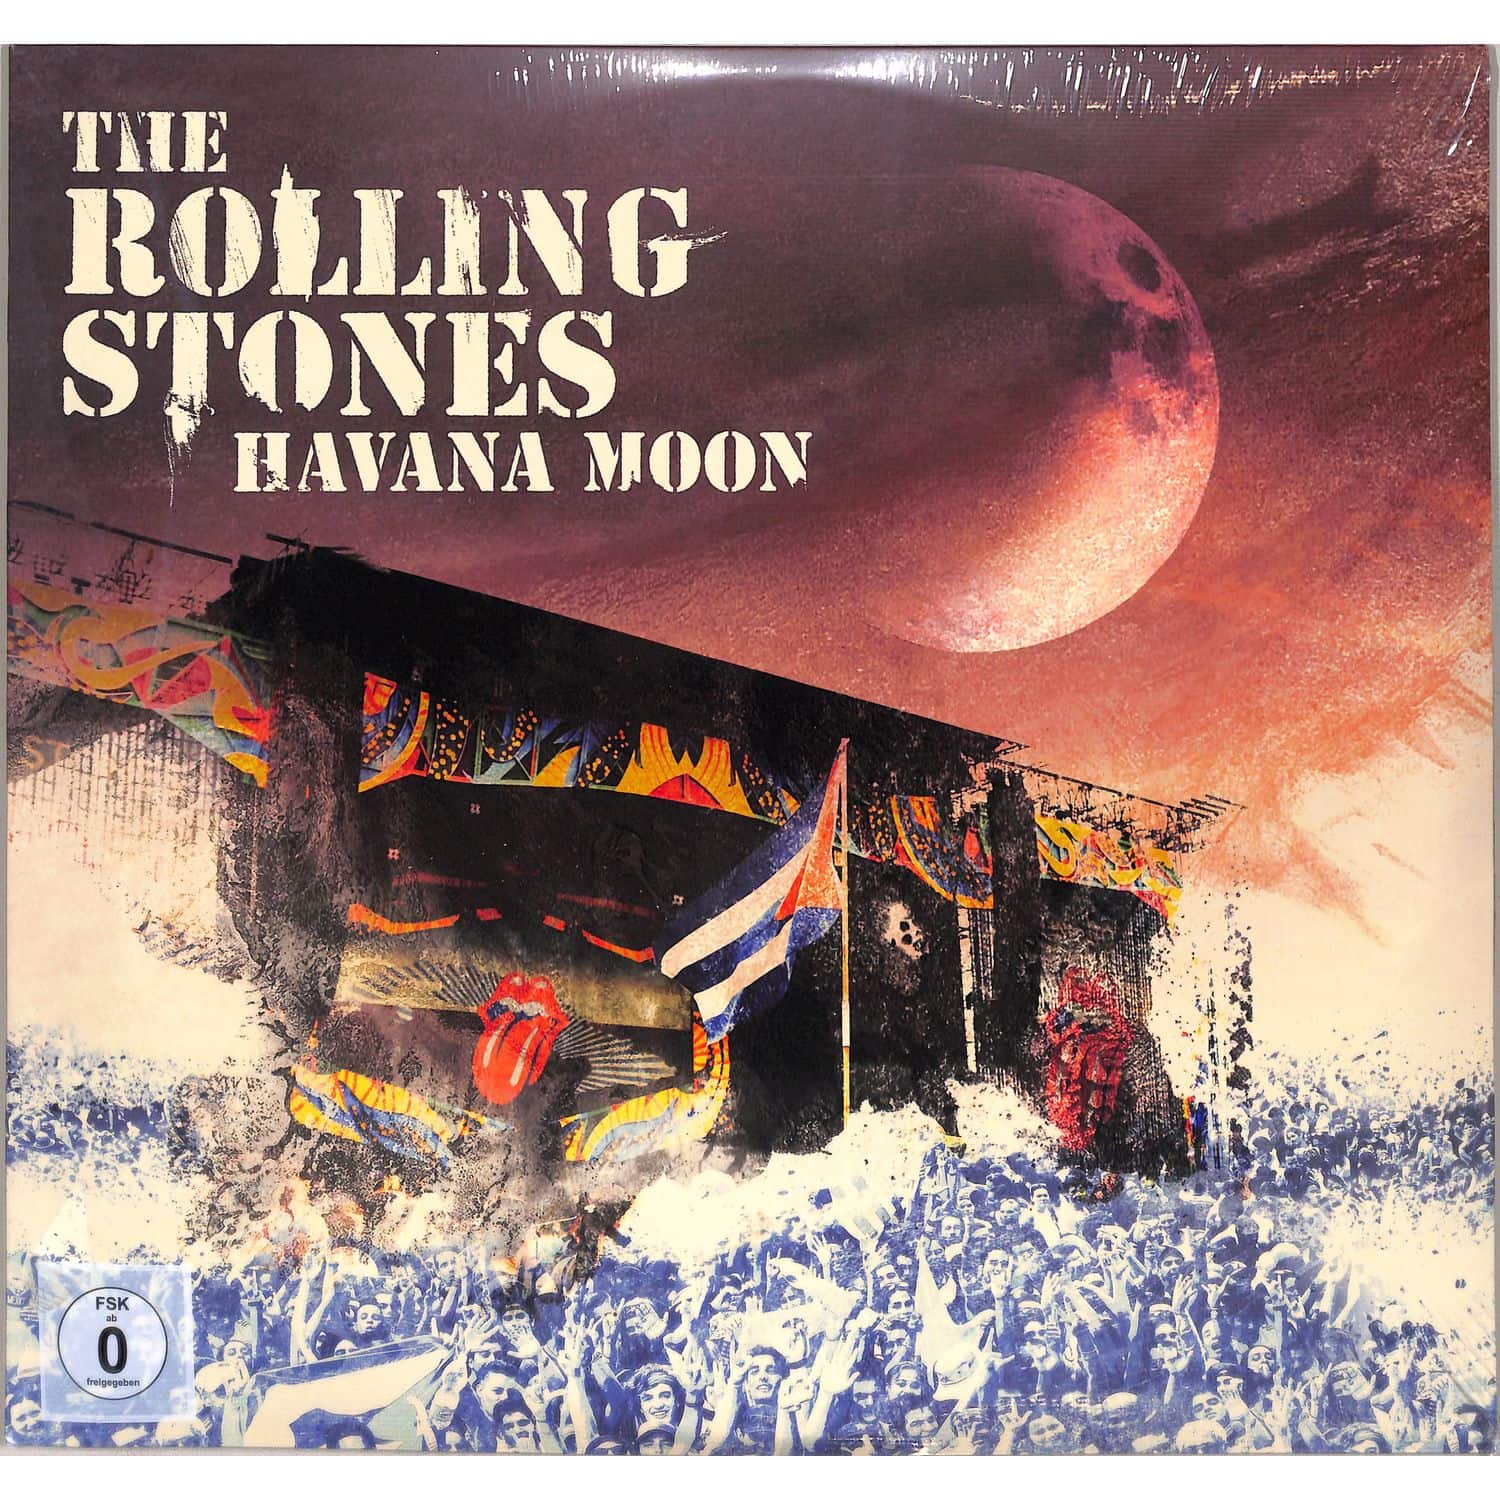 The Rolling Stones - HAVANA MOON 